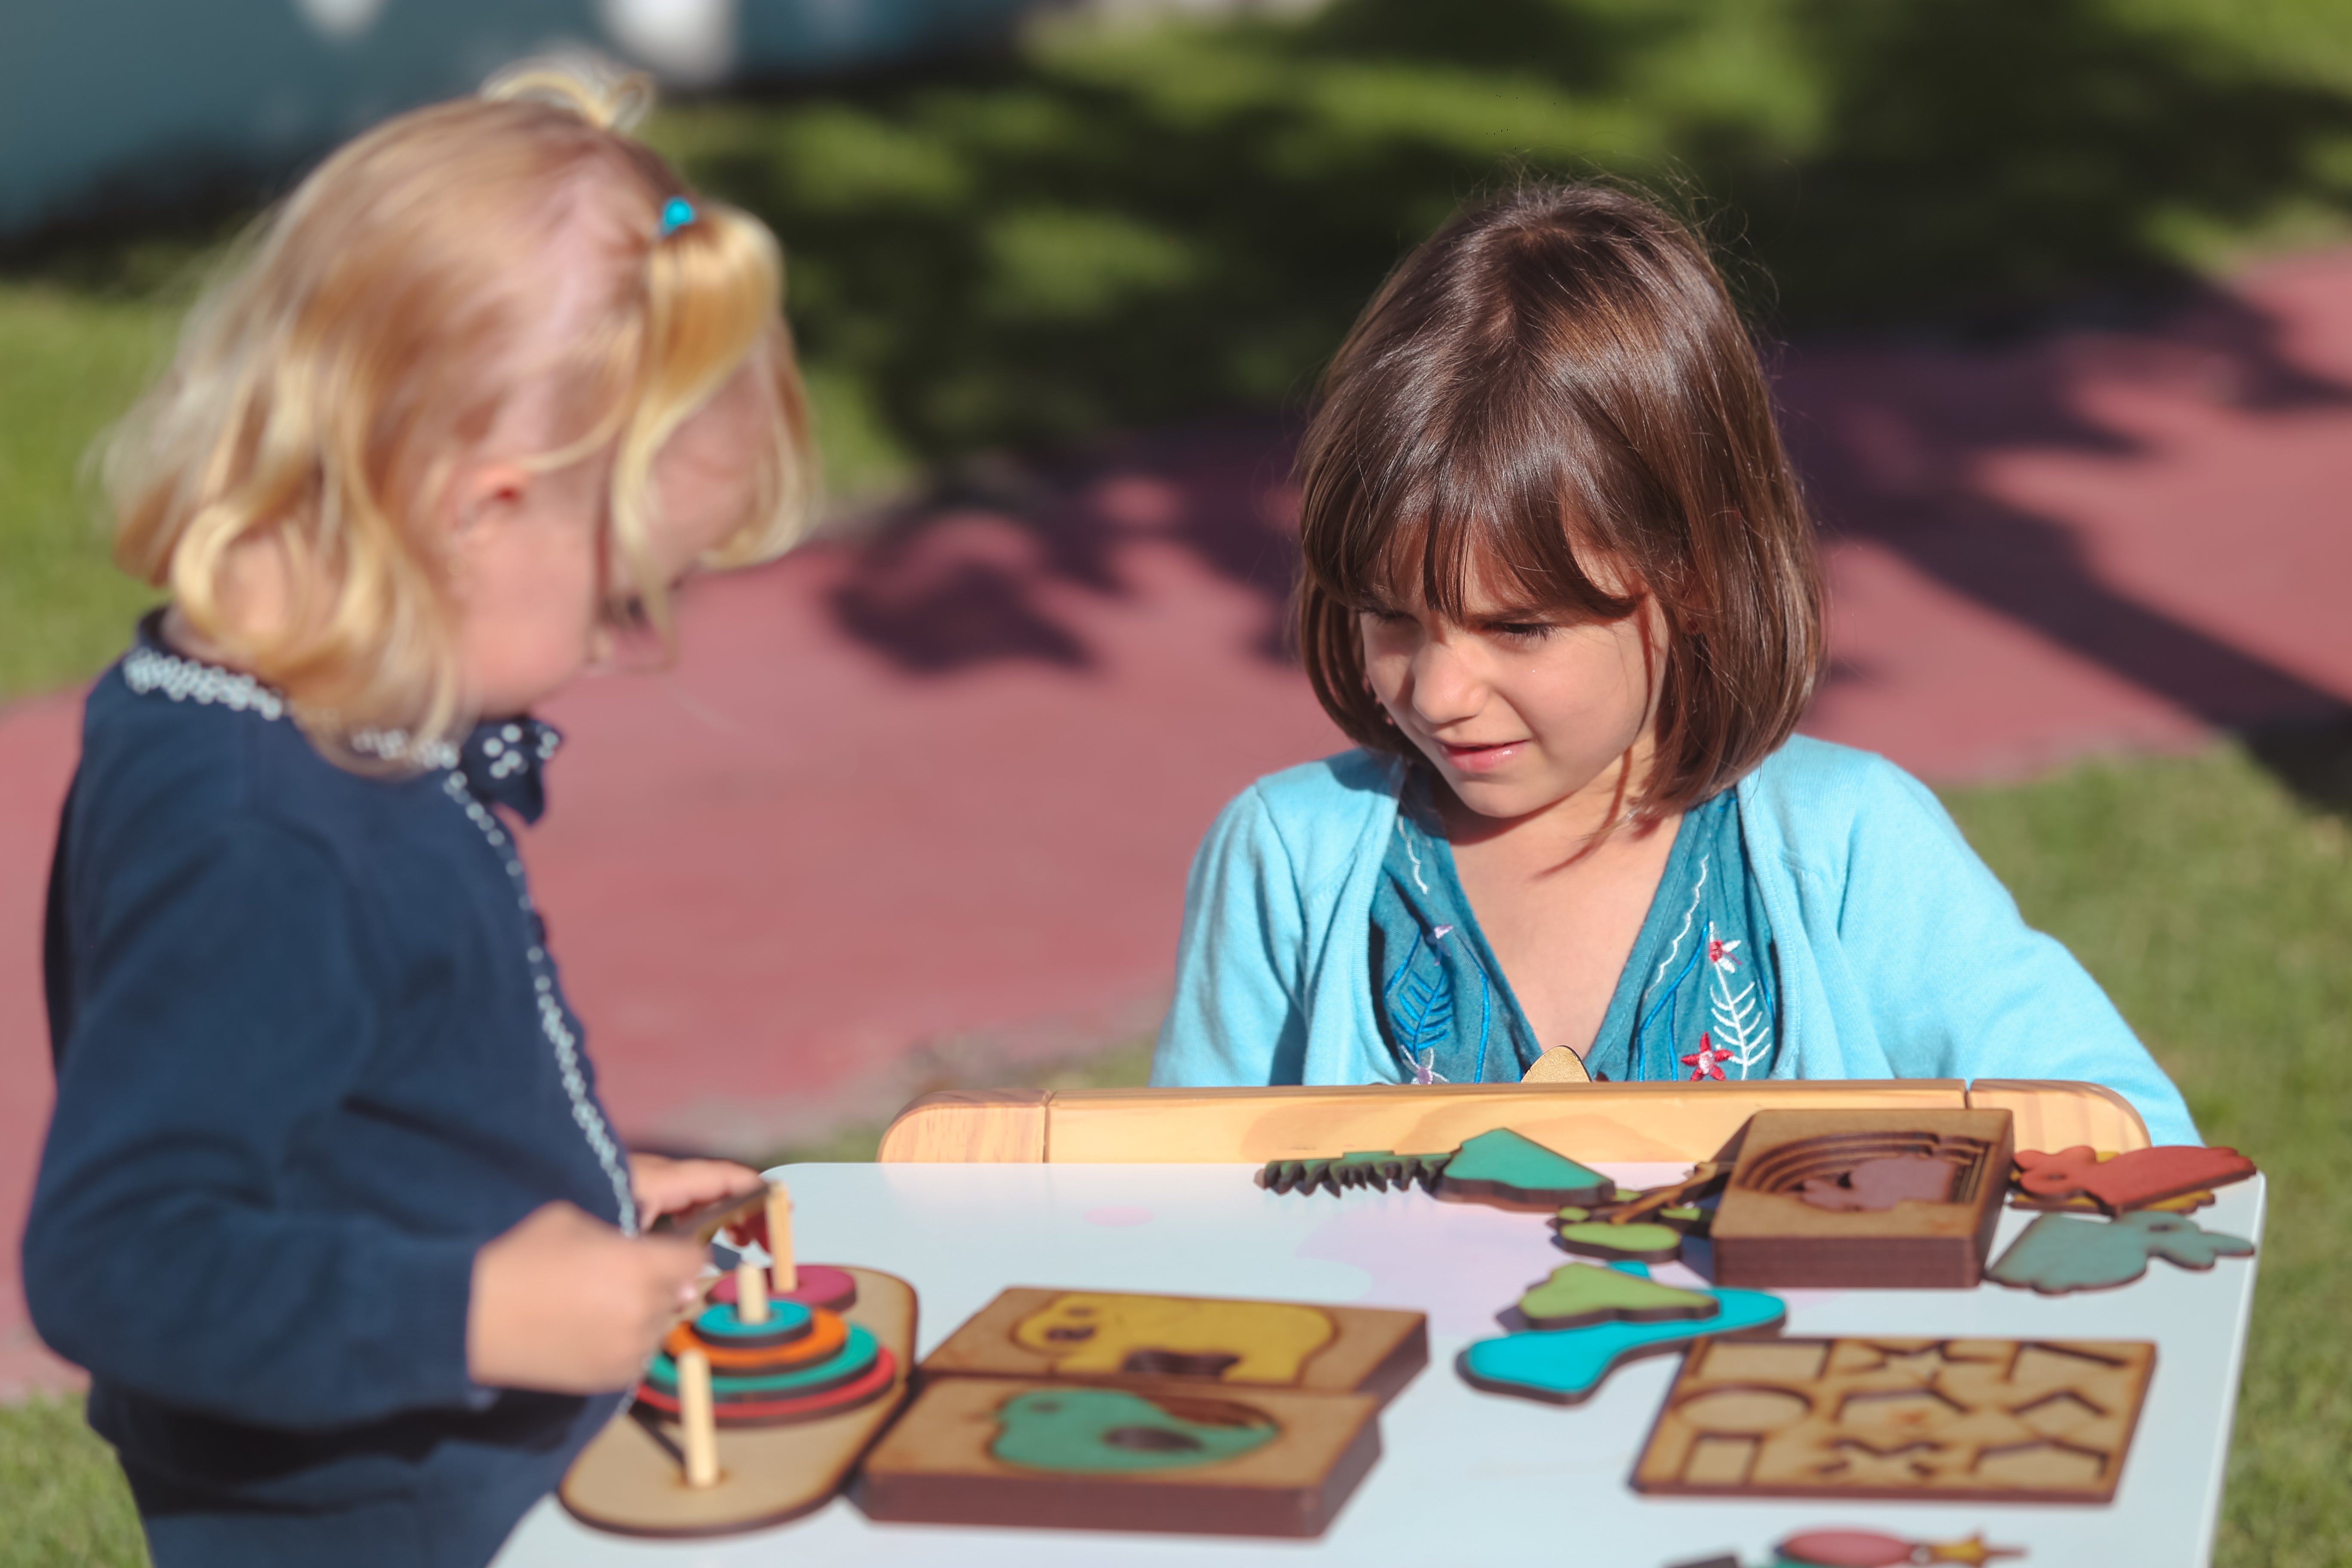 Brinquedos educativos montessorianos de madeira para crianças, jogo de  frutas e animais, jogos interativos infantis de